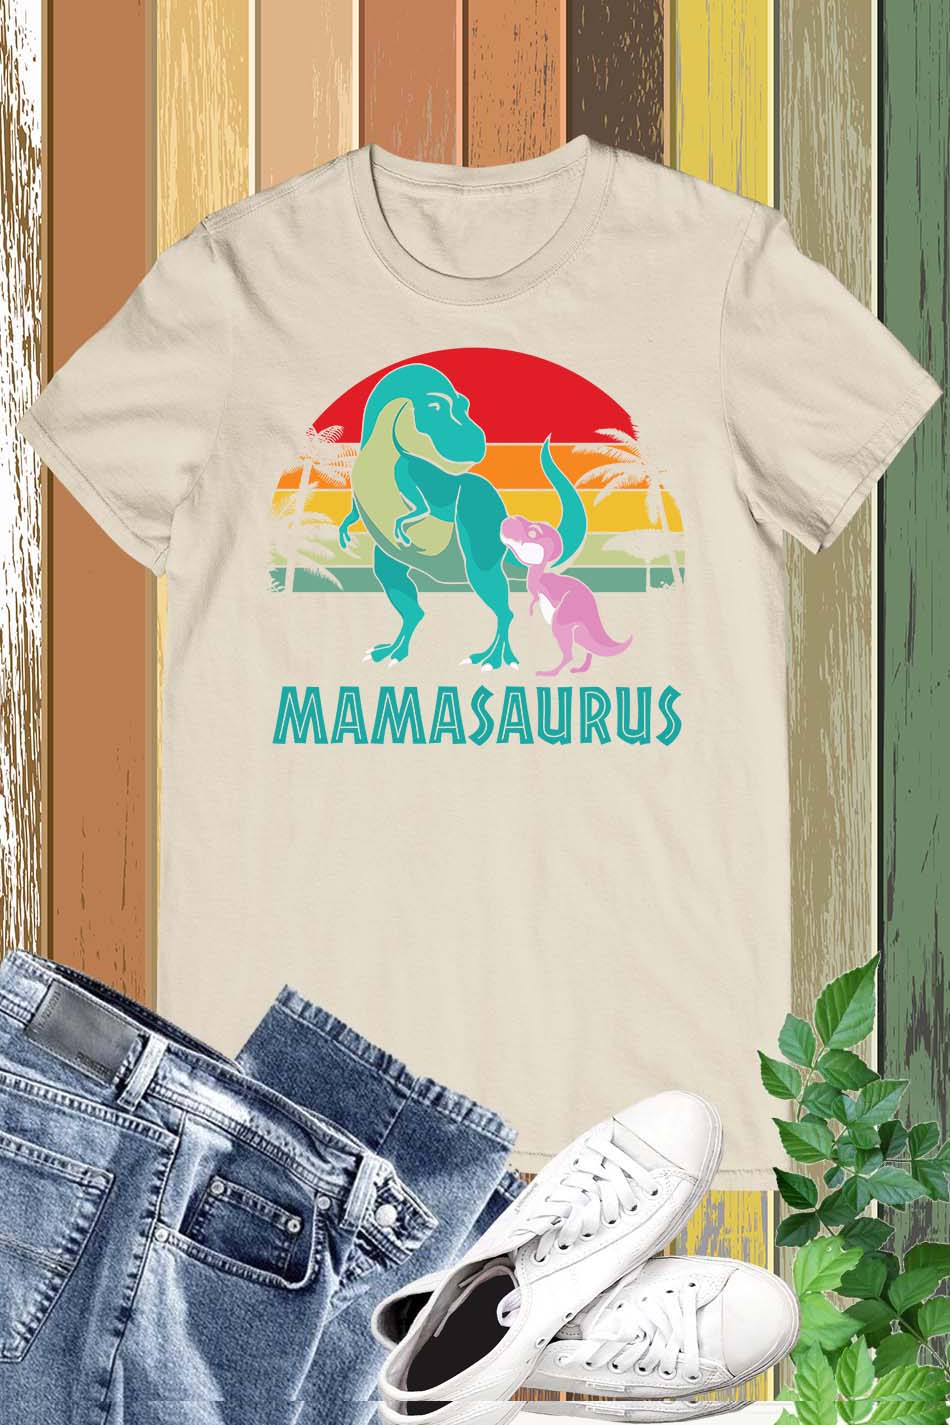 Mamasaurus Vintage T Shirts